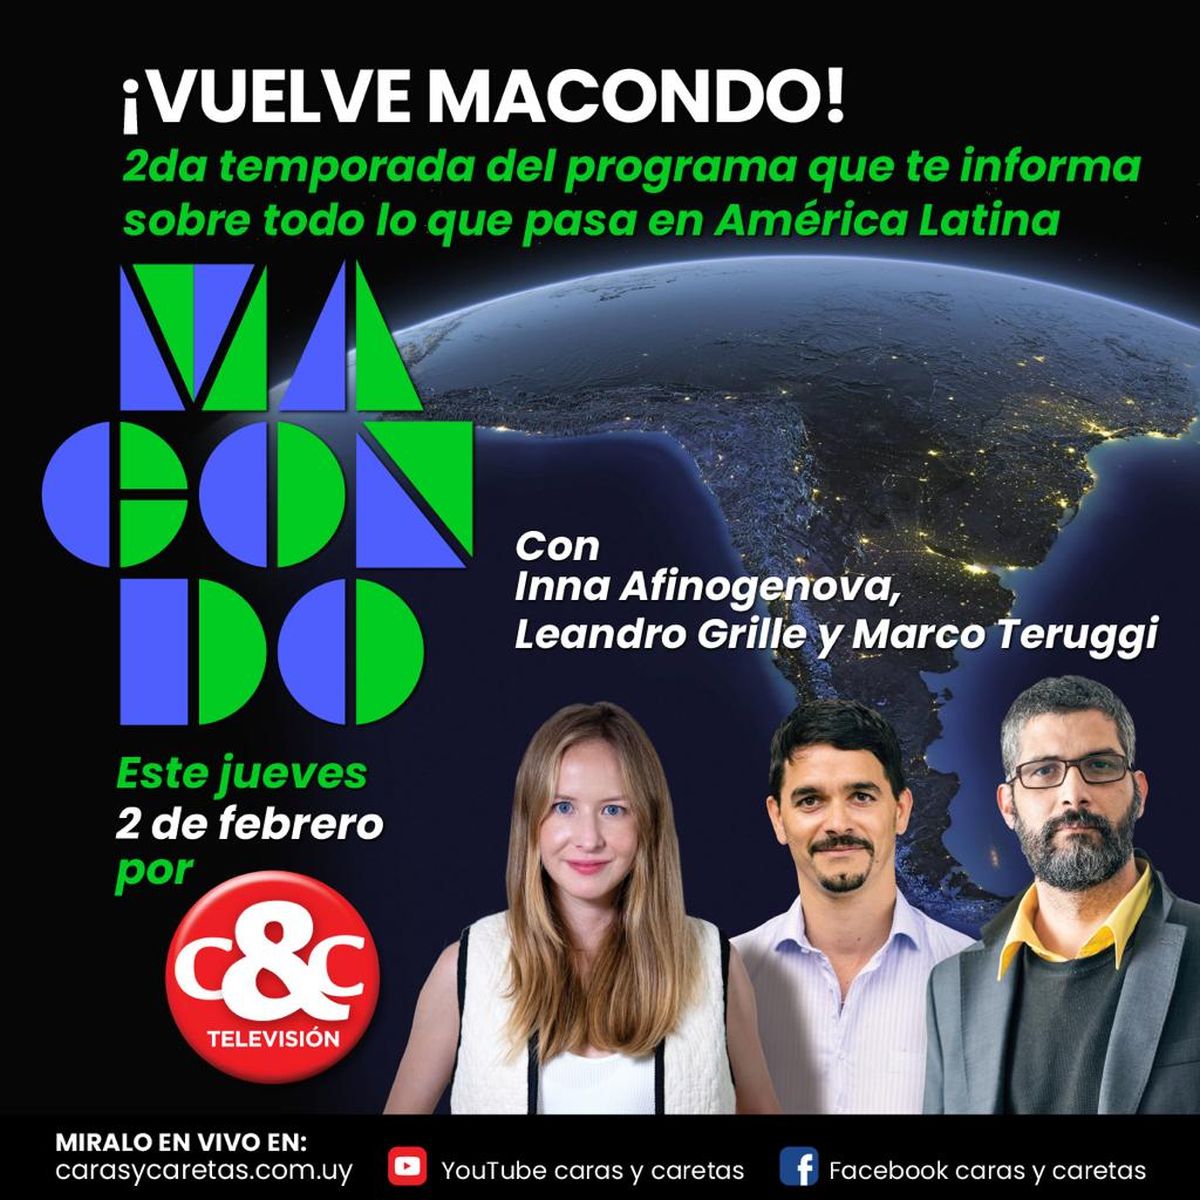 Este jueves vuelve Macondo, una mirada latinoamericana